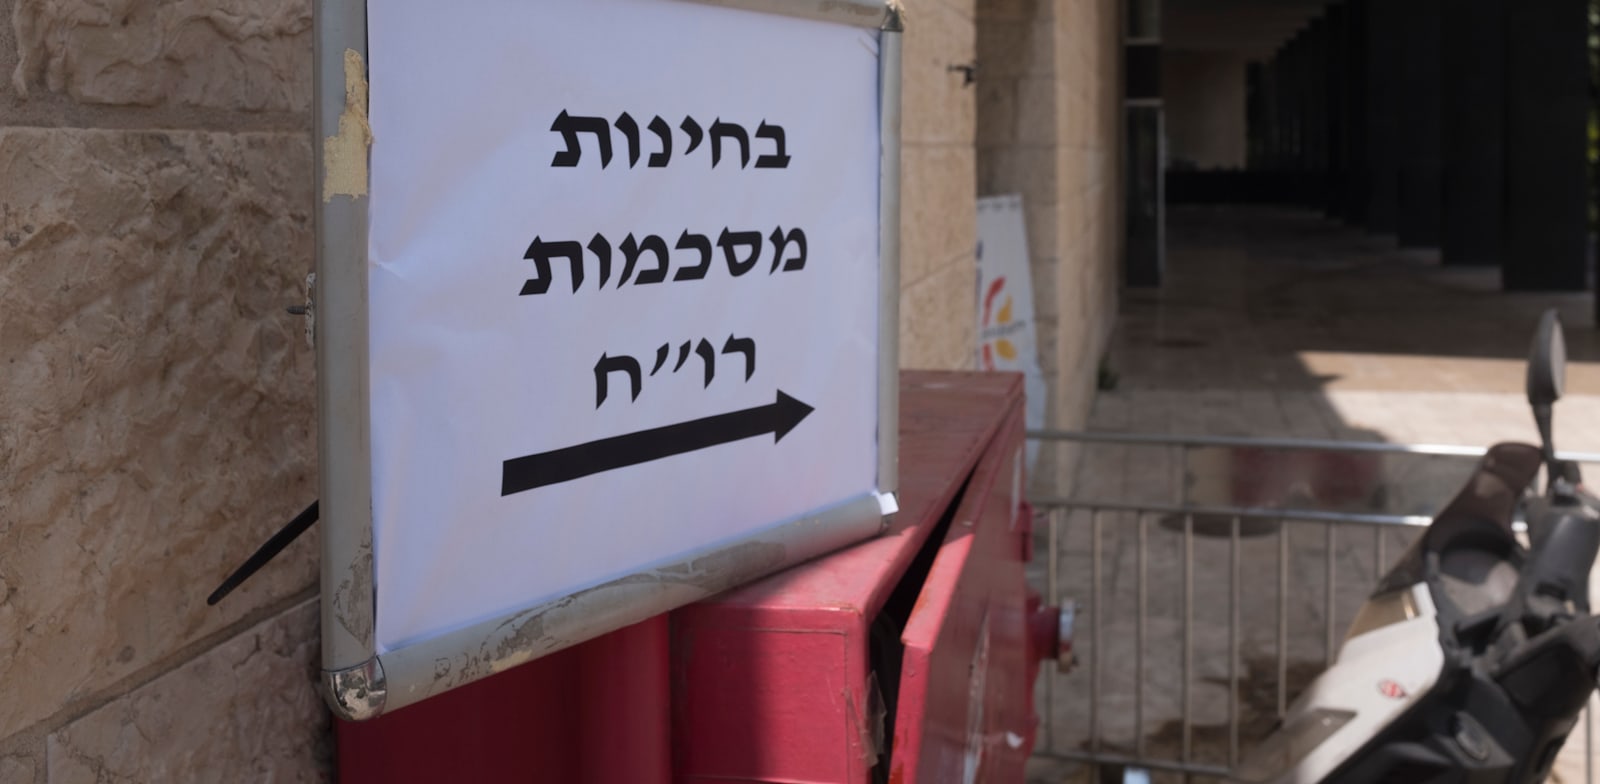 בחינות להסמכה לשכת רואי חשבון בניני האומה בירושלים / צילום: ליאור מזרחי